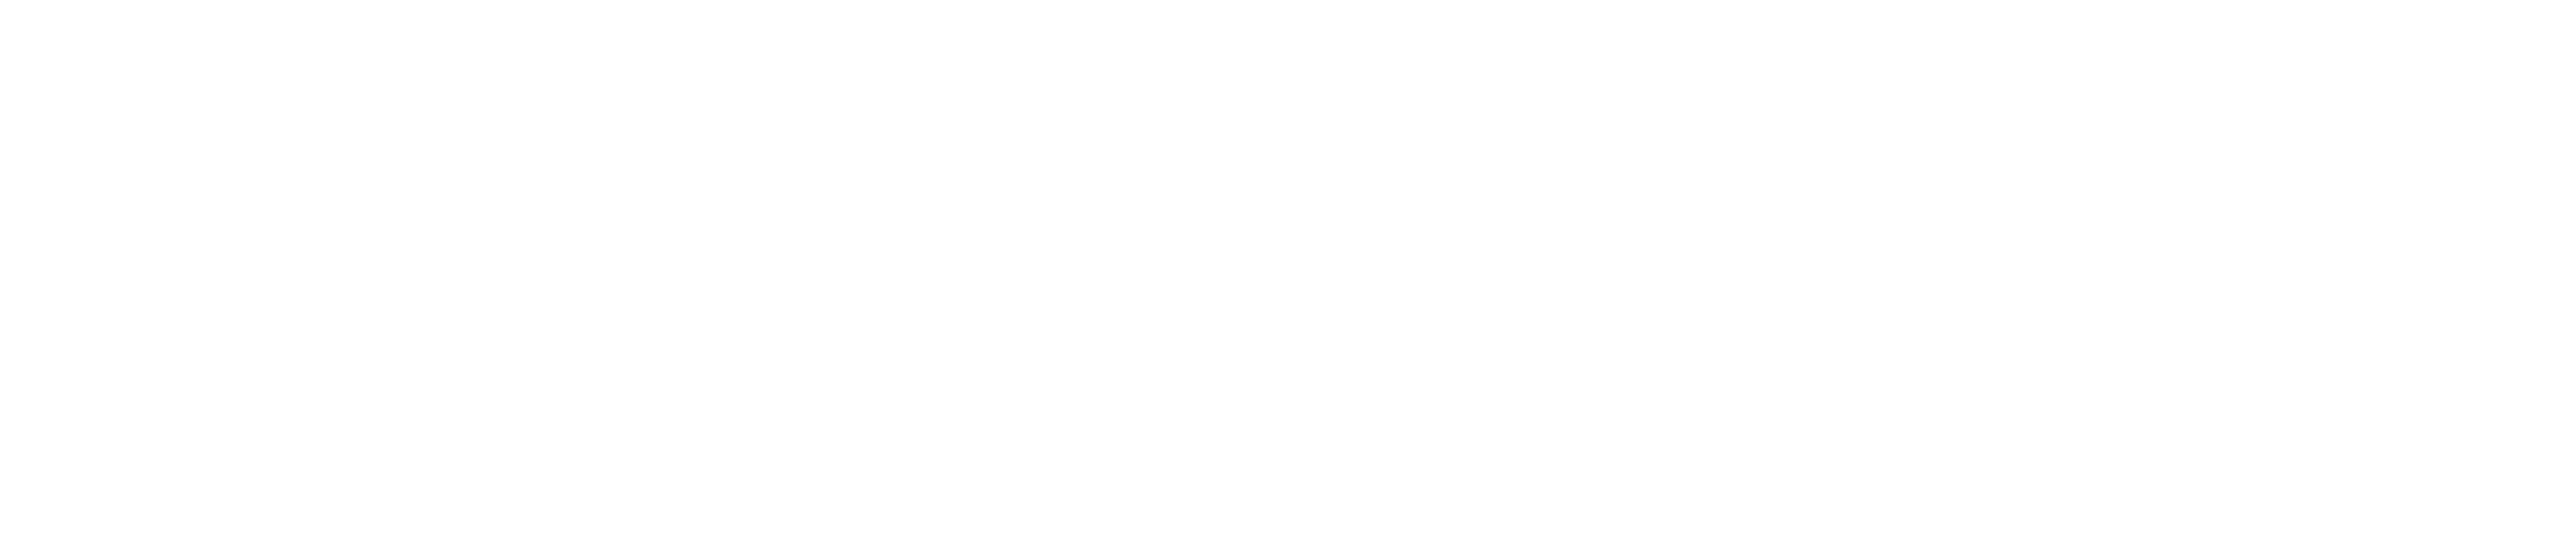 Paga online e Ritira in Magazzino - Unieuro 